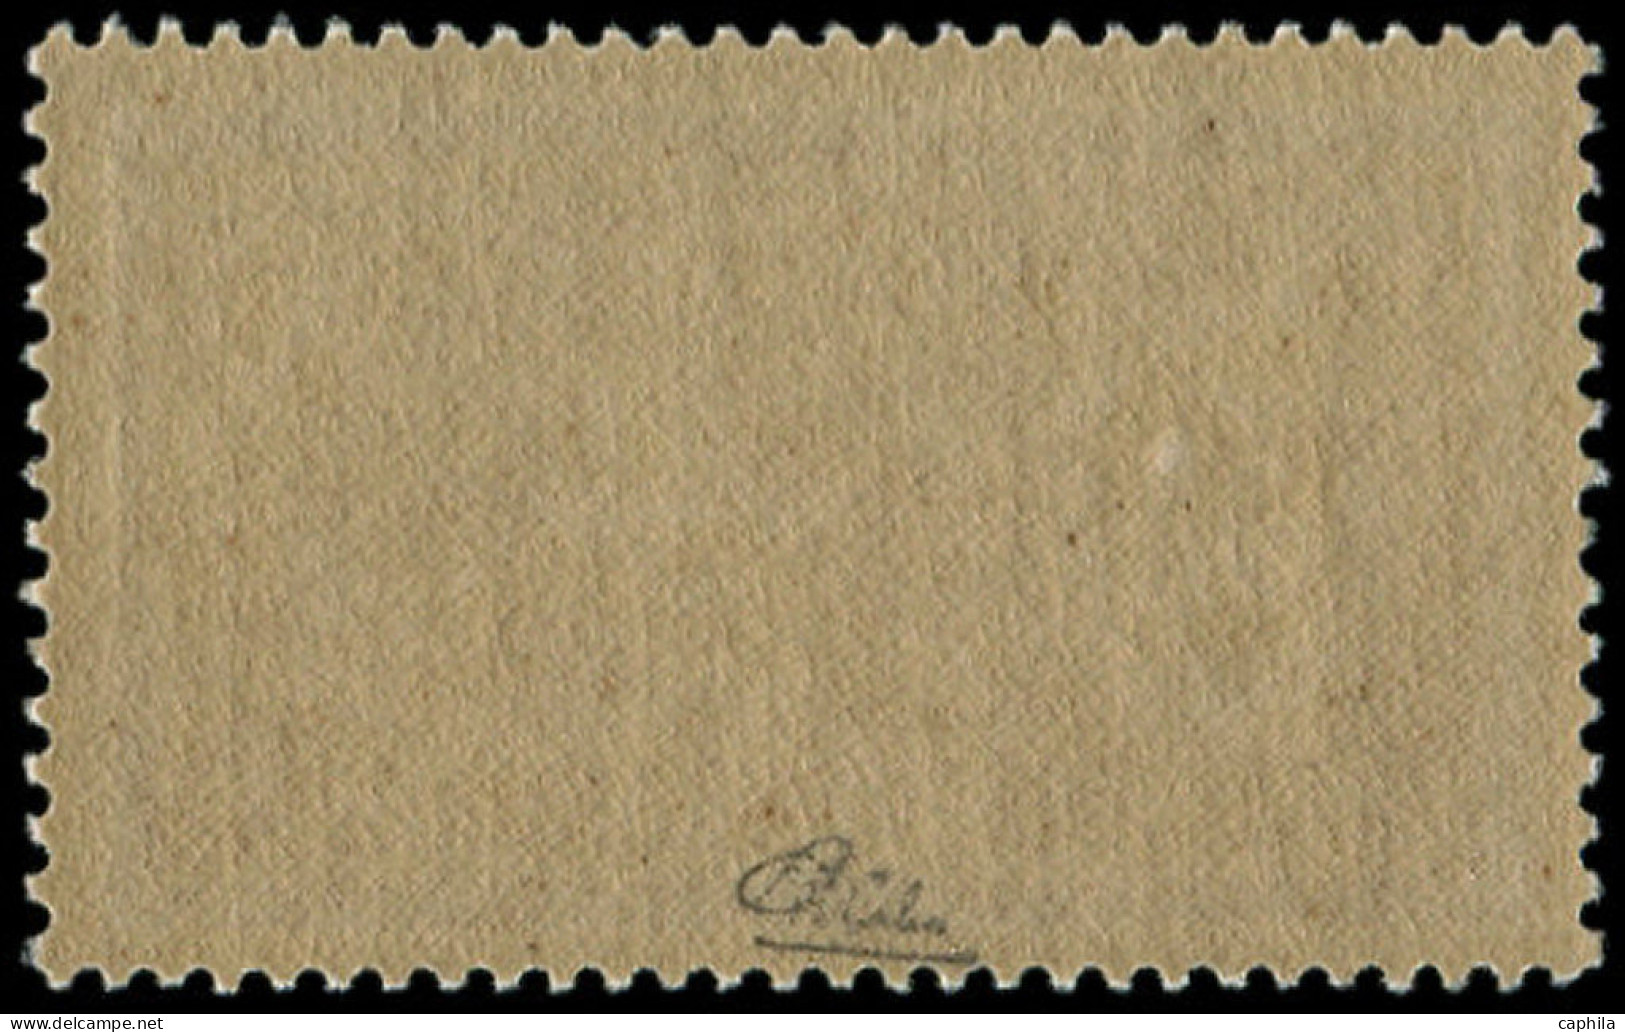 ** FRANCE - Poste - 240, Très Bon Centrage, Signé Calves: 3f. Merson - Unused Stamps